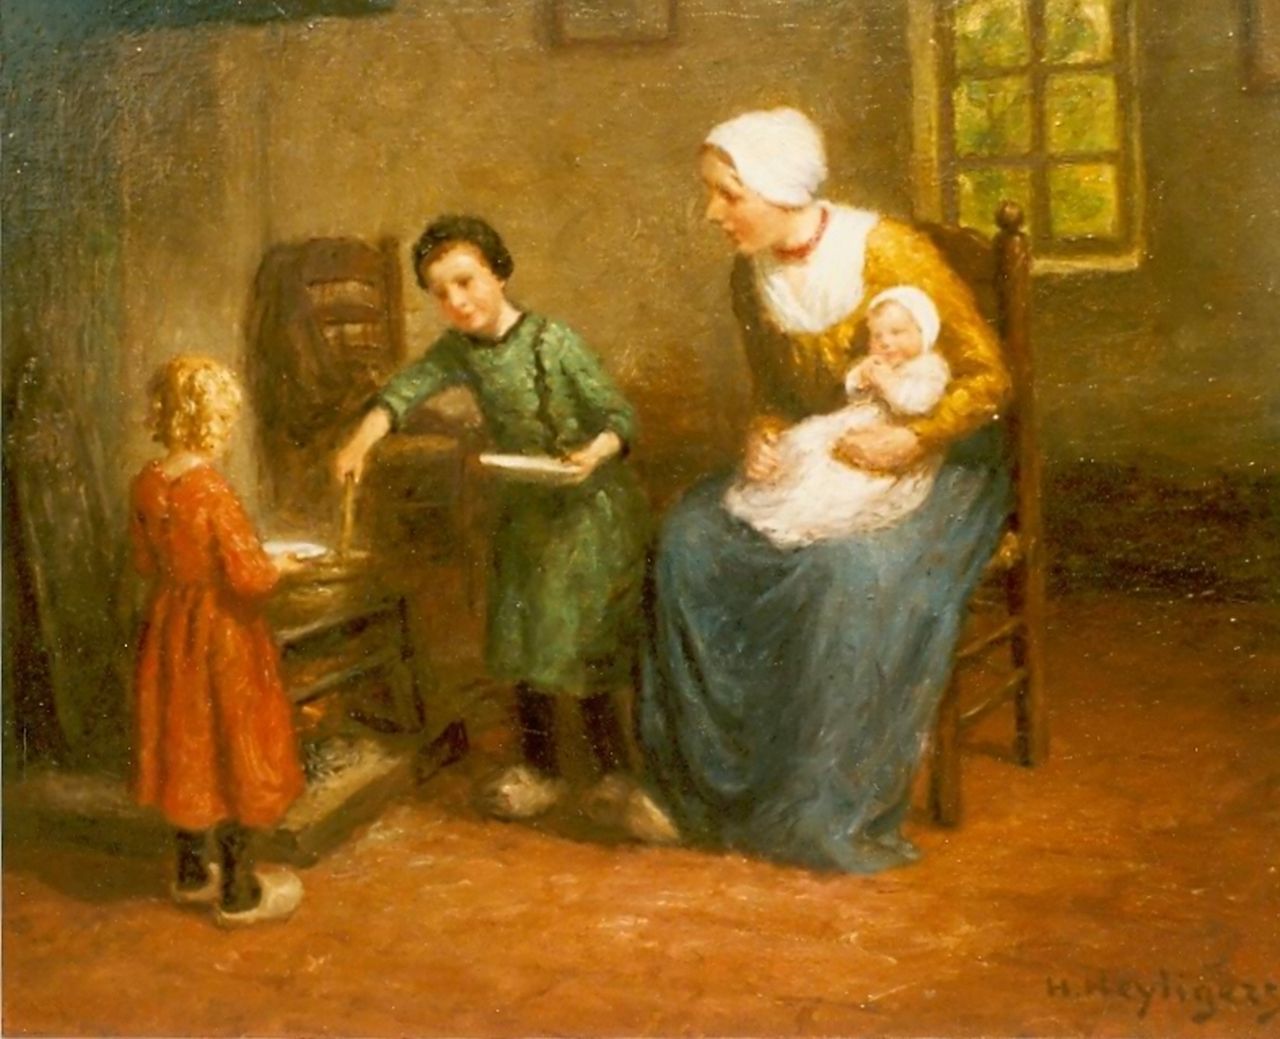 Heijligers H.  | Hendrik 'Henri' Heijligers, Interieur met moeder en kind, olieverf op doek 45,5 x 54,5 cm, gesigneerd rechtsonder